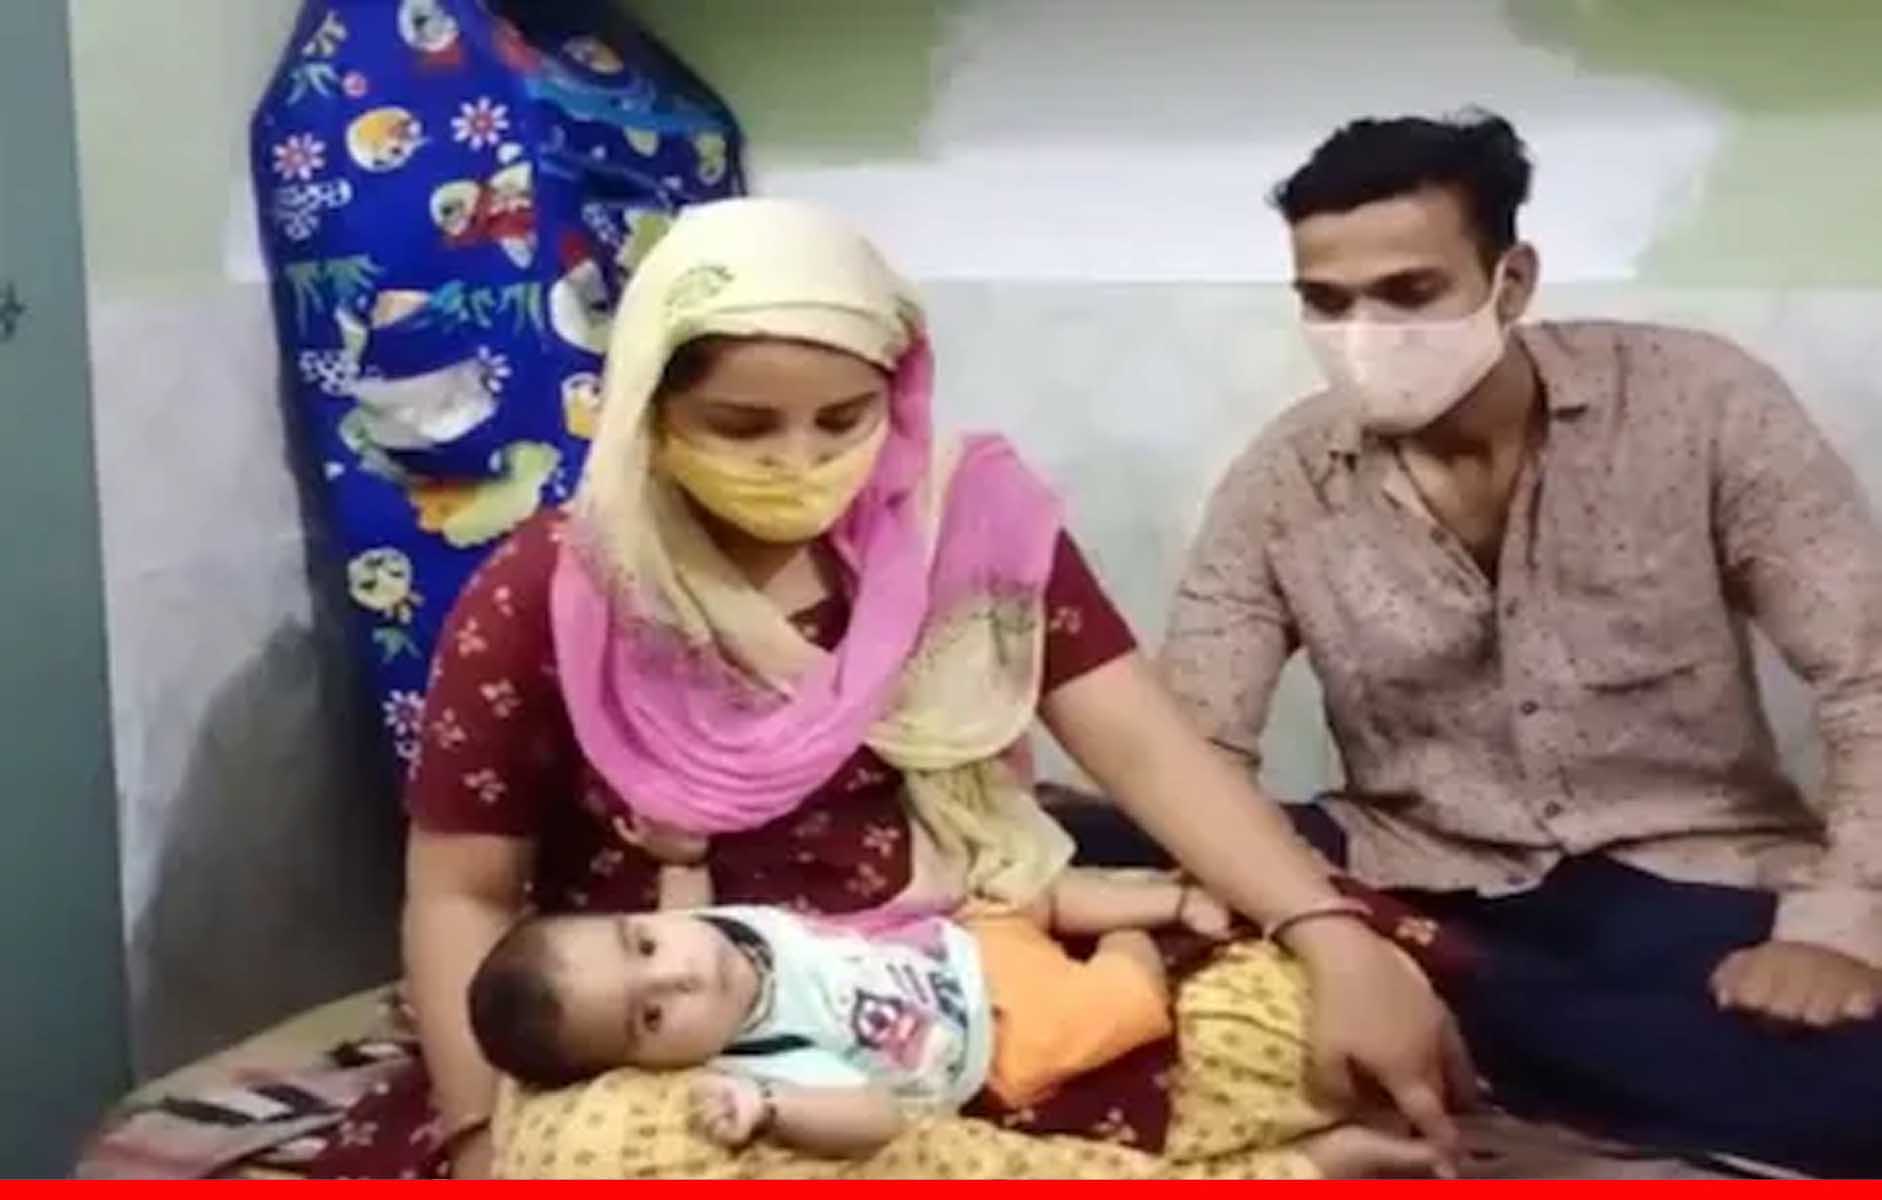 मासूम नूर फातिमा हार गई जिंदगी की जंग, नहीं लग पाया 16 करोड़ का इंजेक्शन